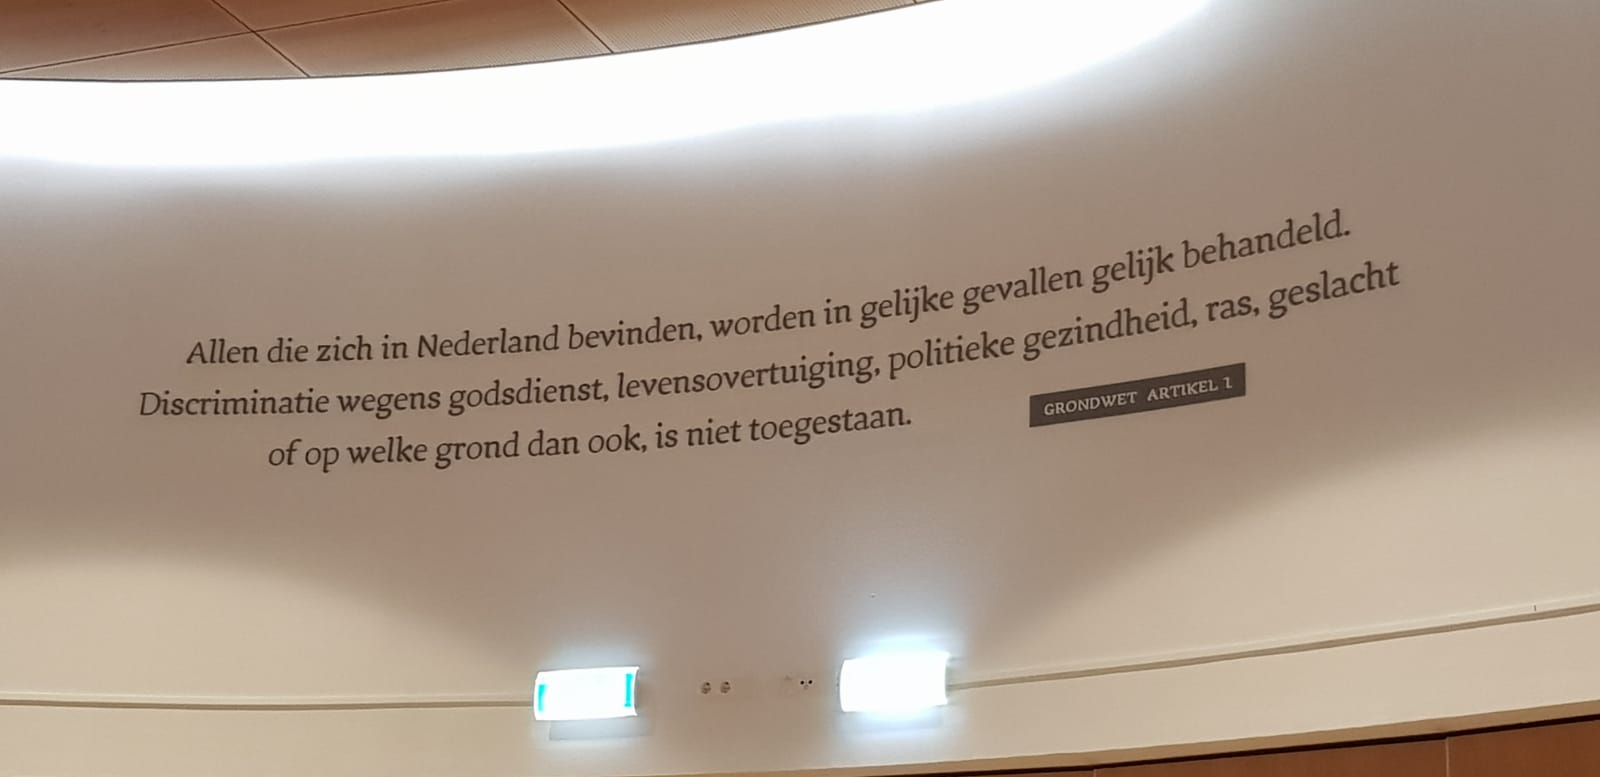 Raadsleden gemeente Kampen geven artikel 1 van de Grondwet prominente plek in raadzaal stadhuis